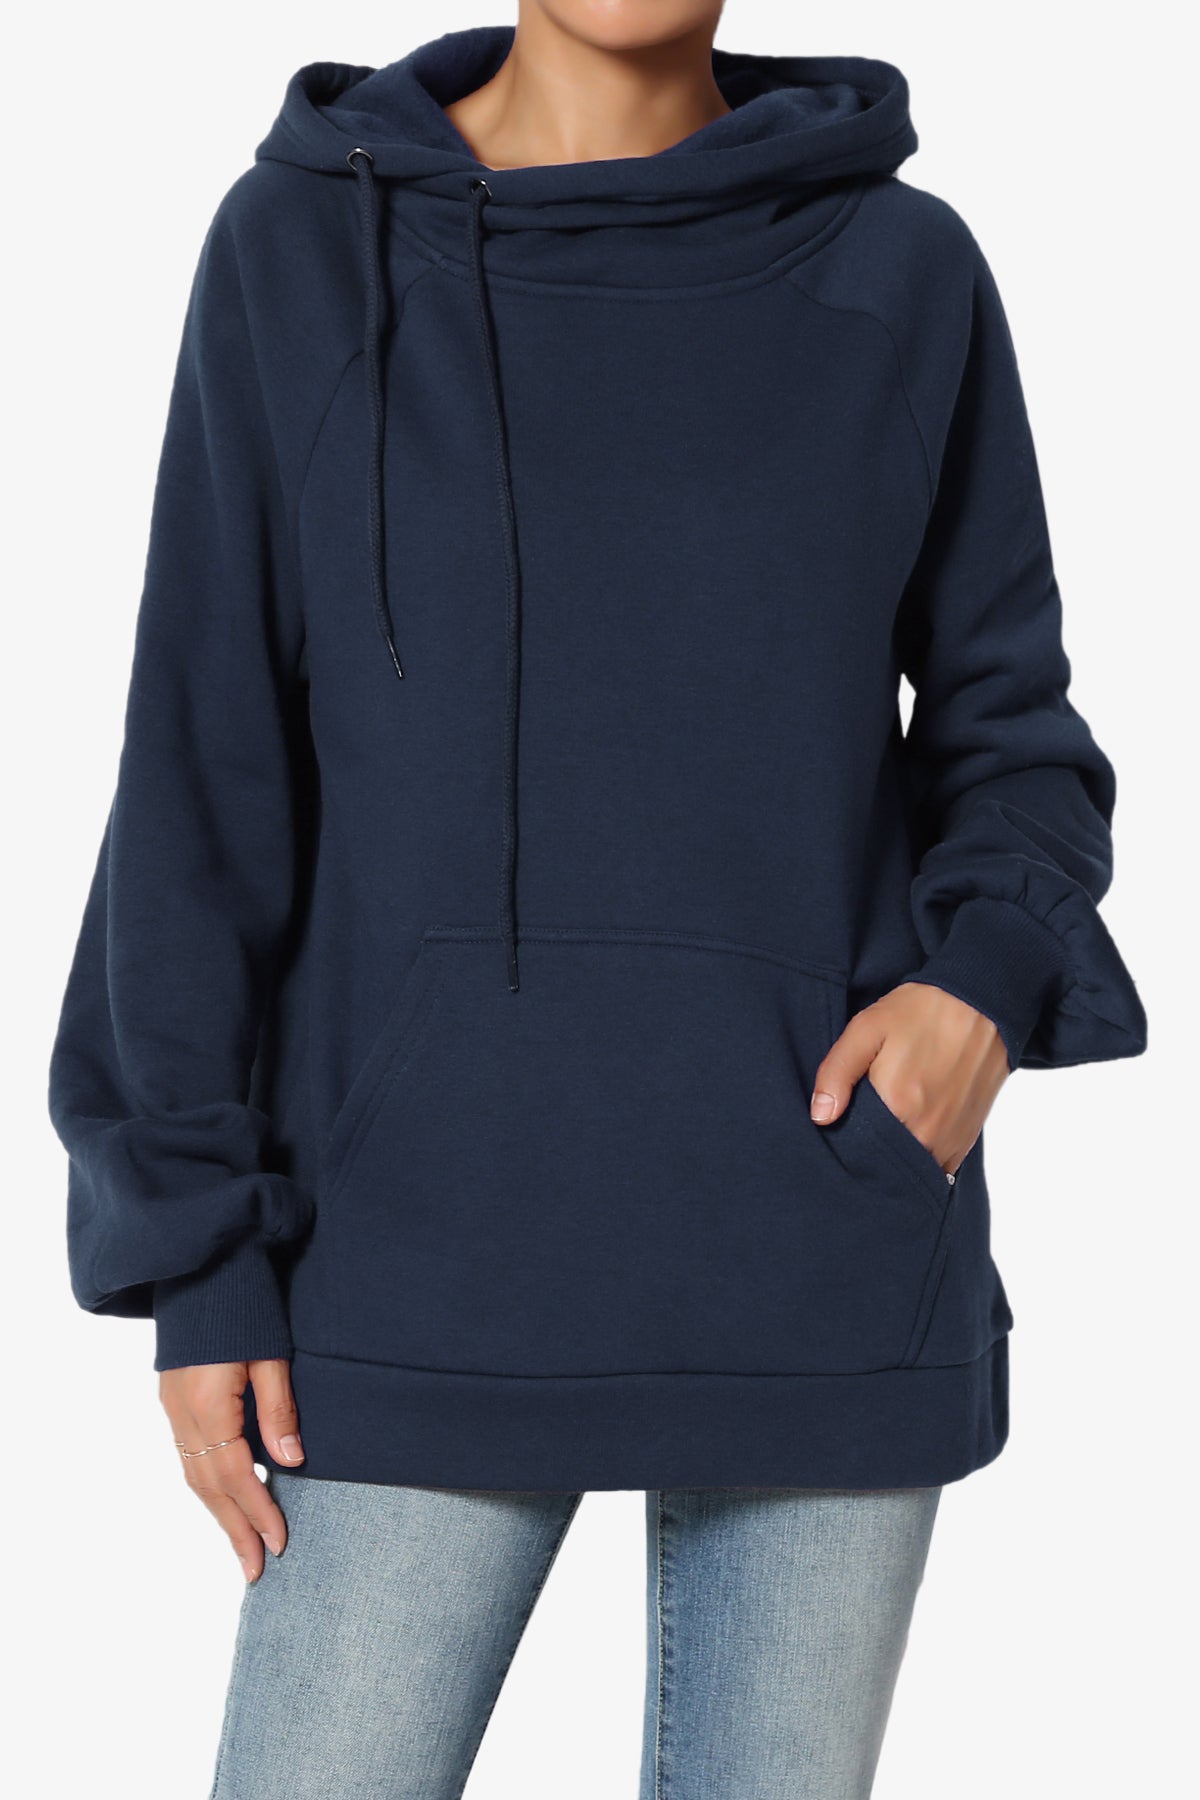 Accie Side Drawstring Hooded Sweatshirts PLUS